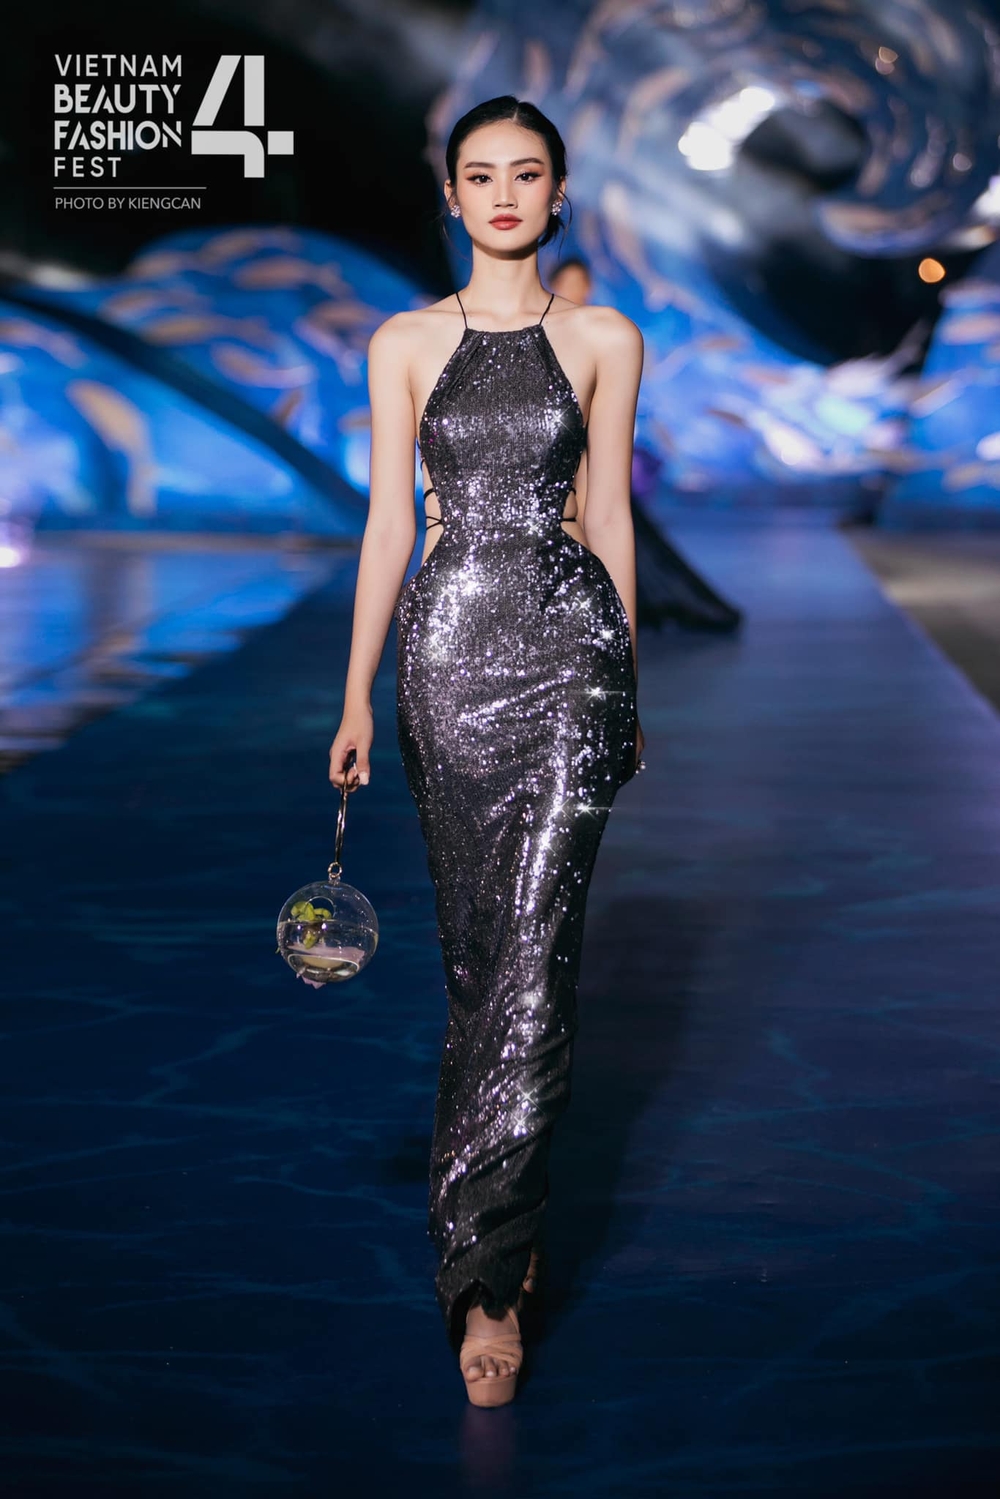 Huỳnh Trần Ý Nhi - Tân Miss World Vietnam 2023: Tính hướng nội nhưng ứng xử cực ấn tượng - Ảnh 5.